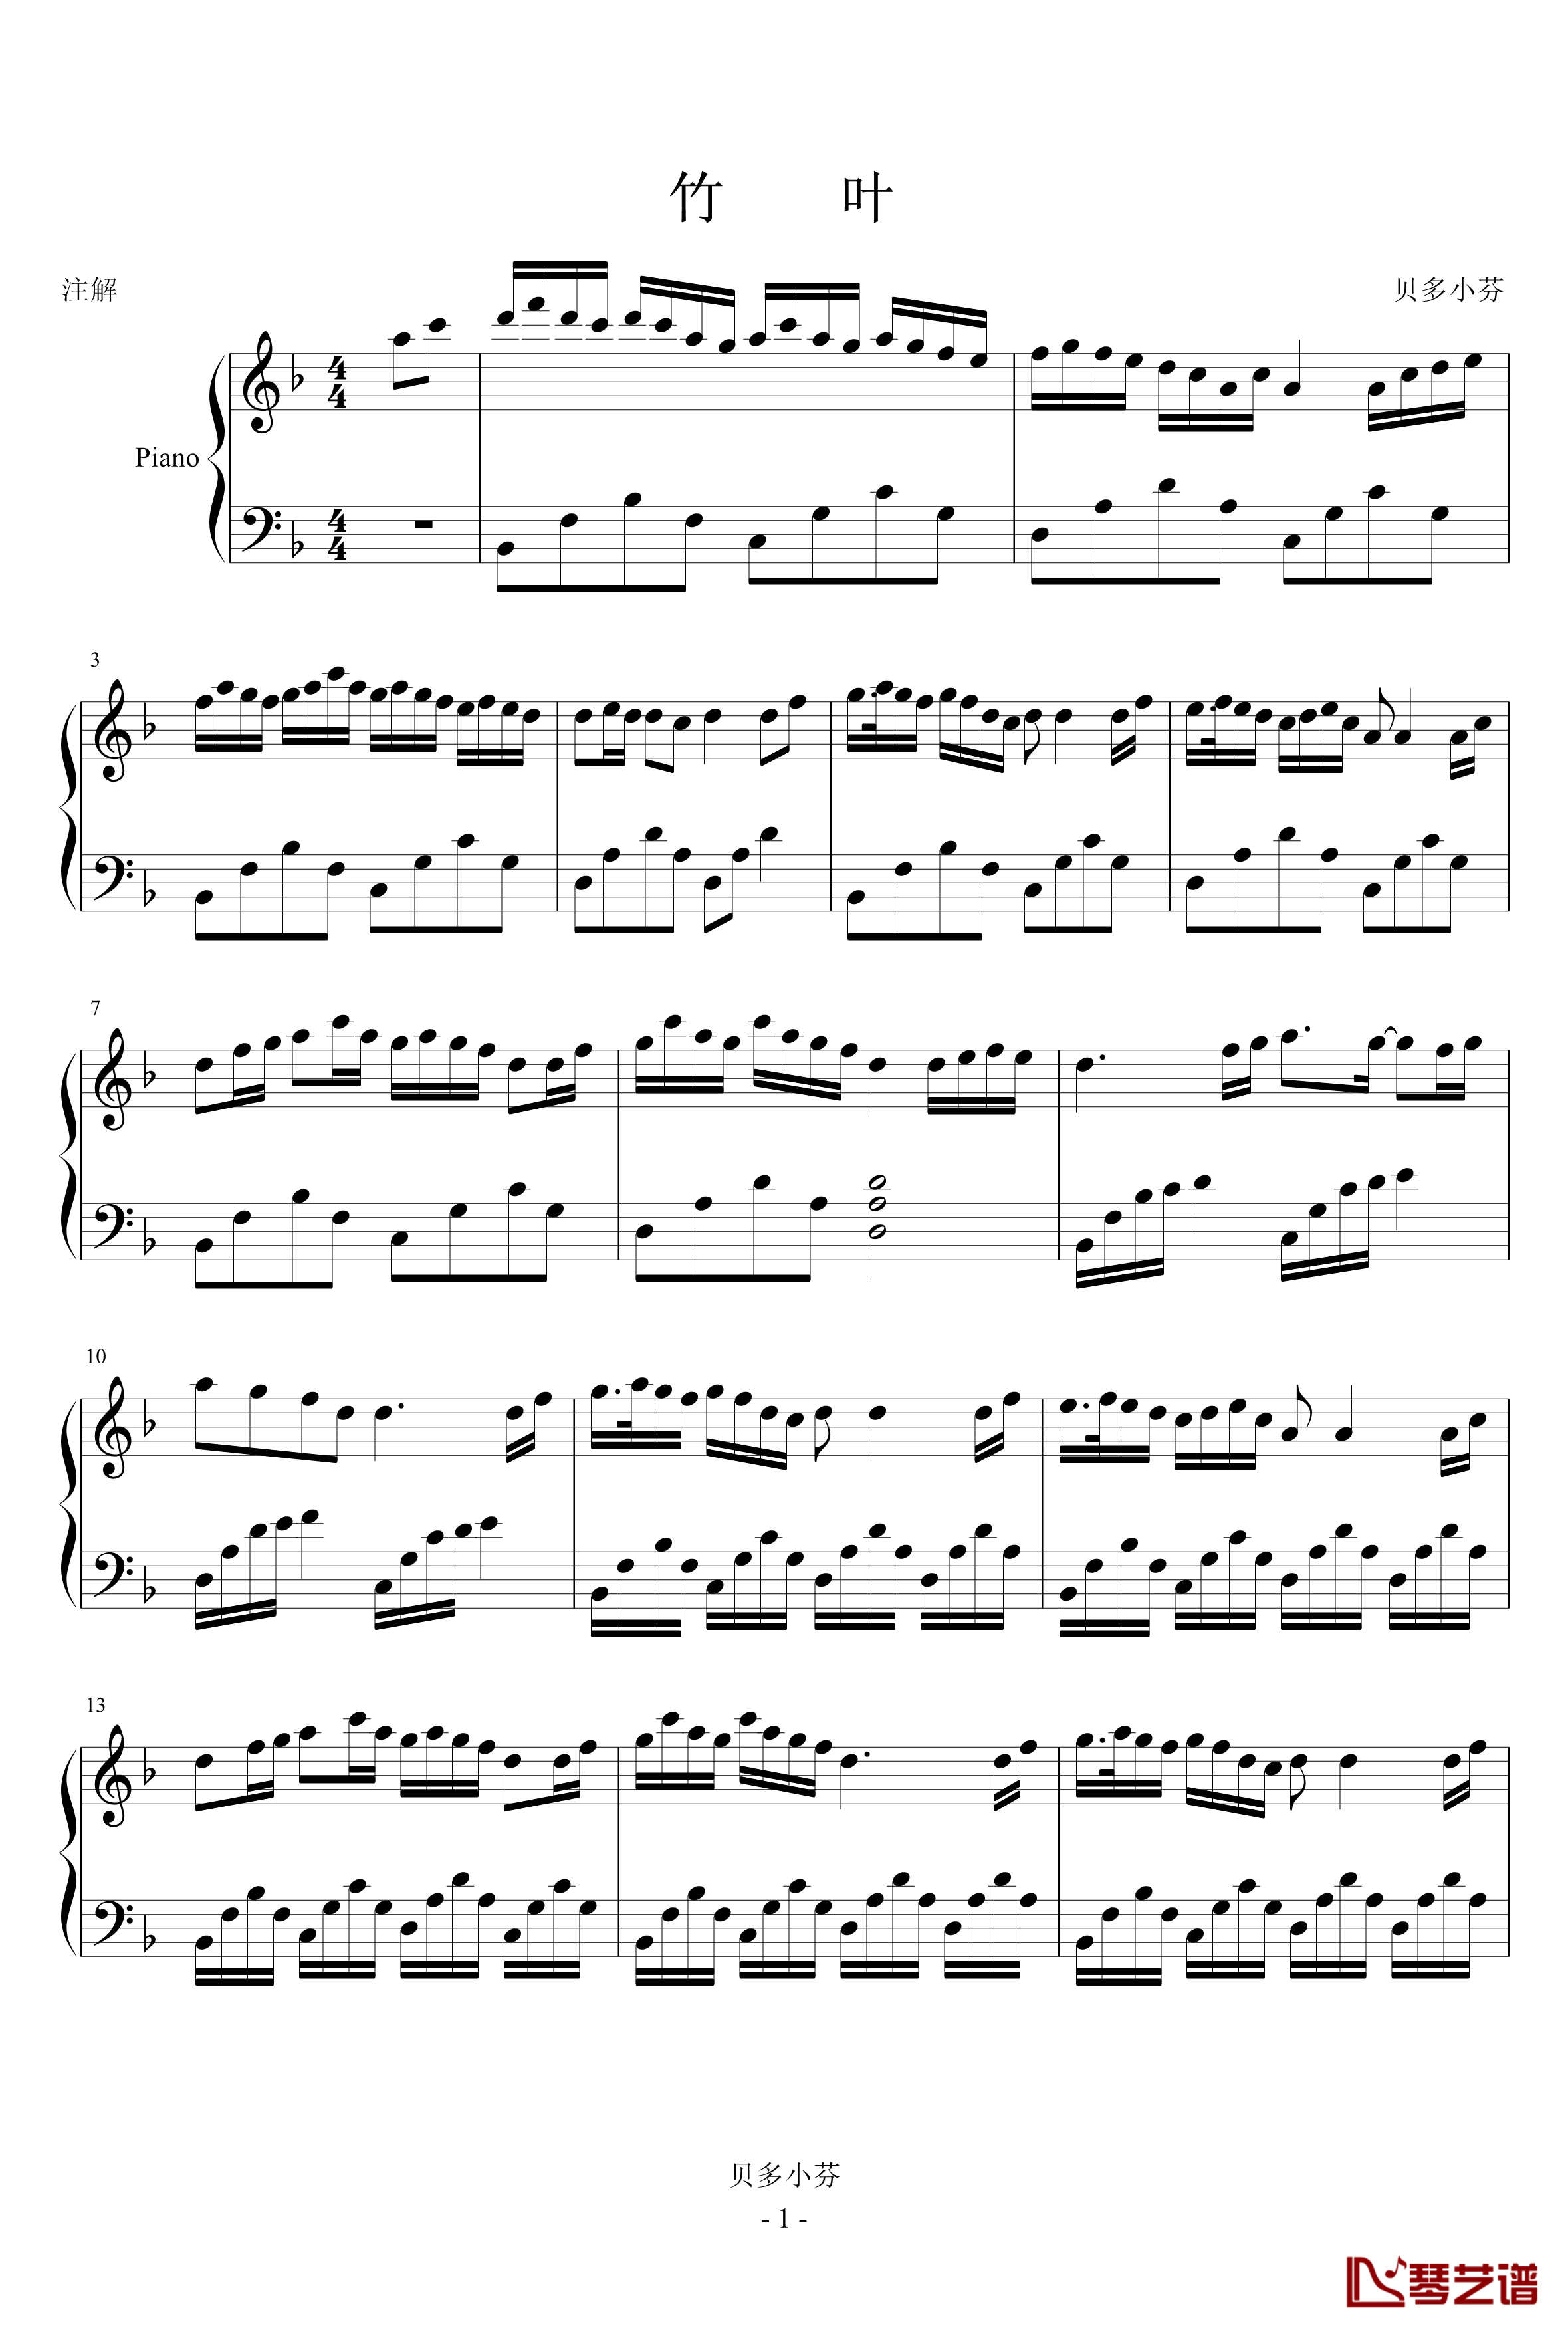 竹叶钢琴谱-贝多小芬